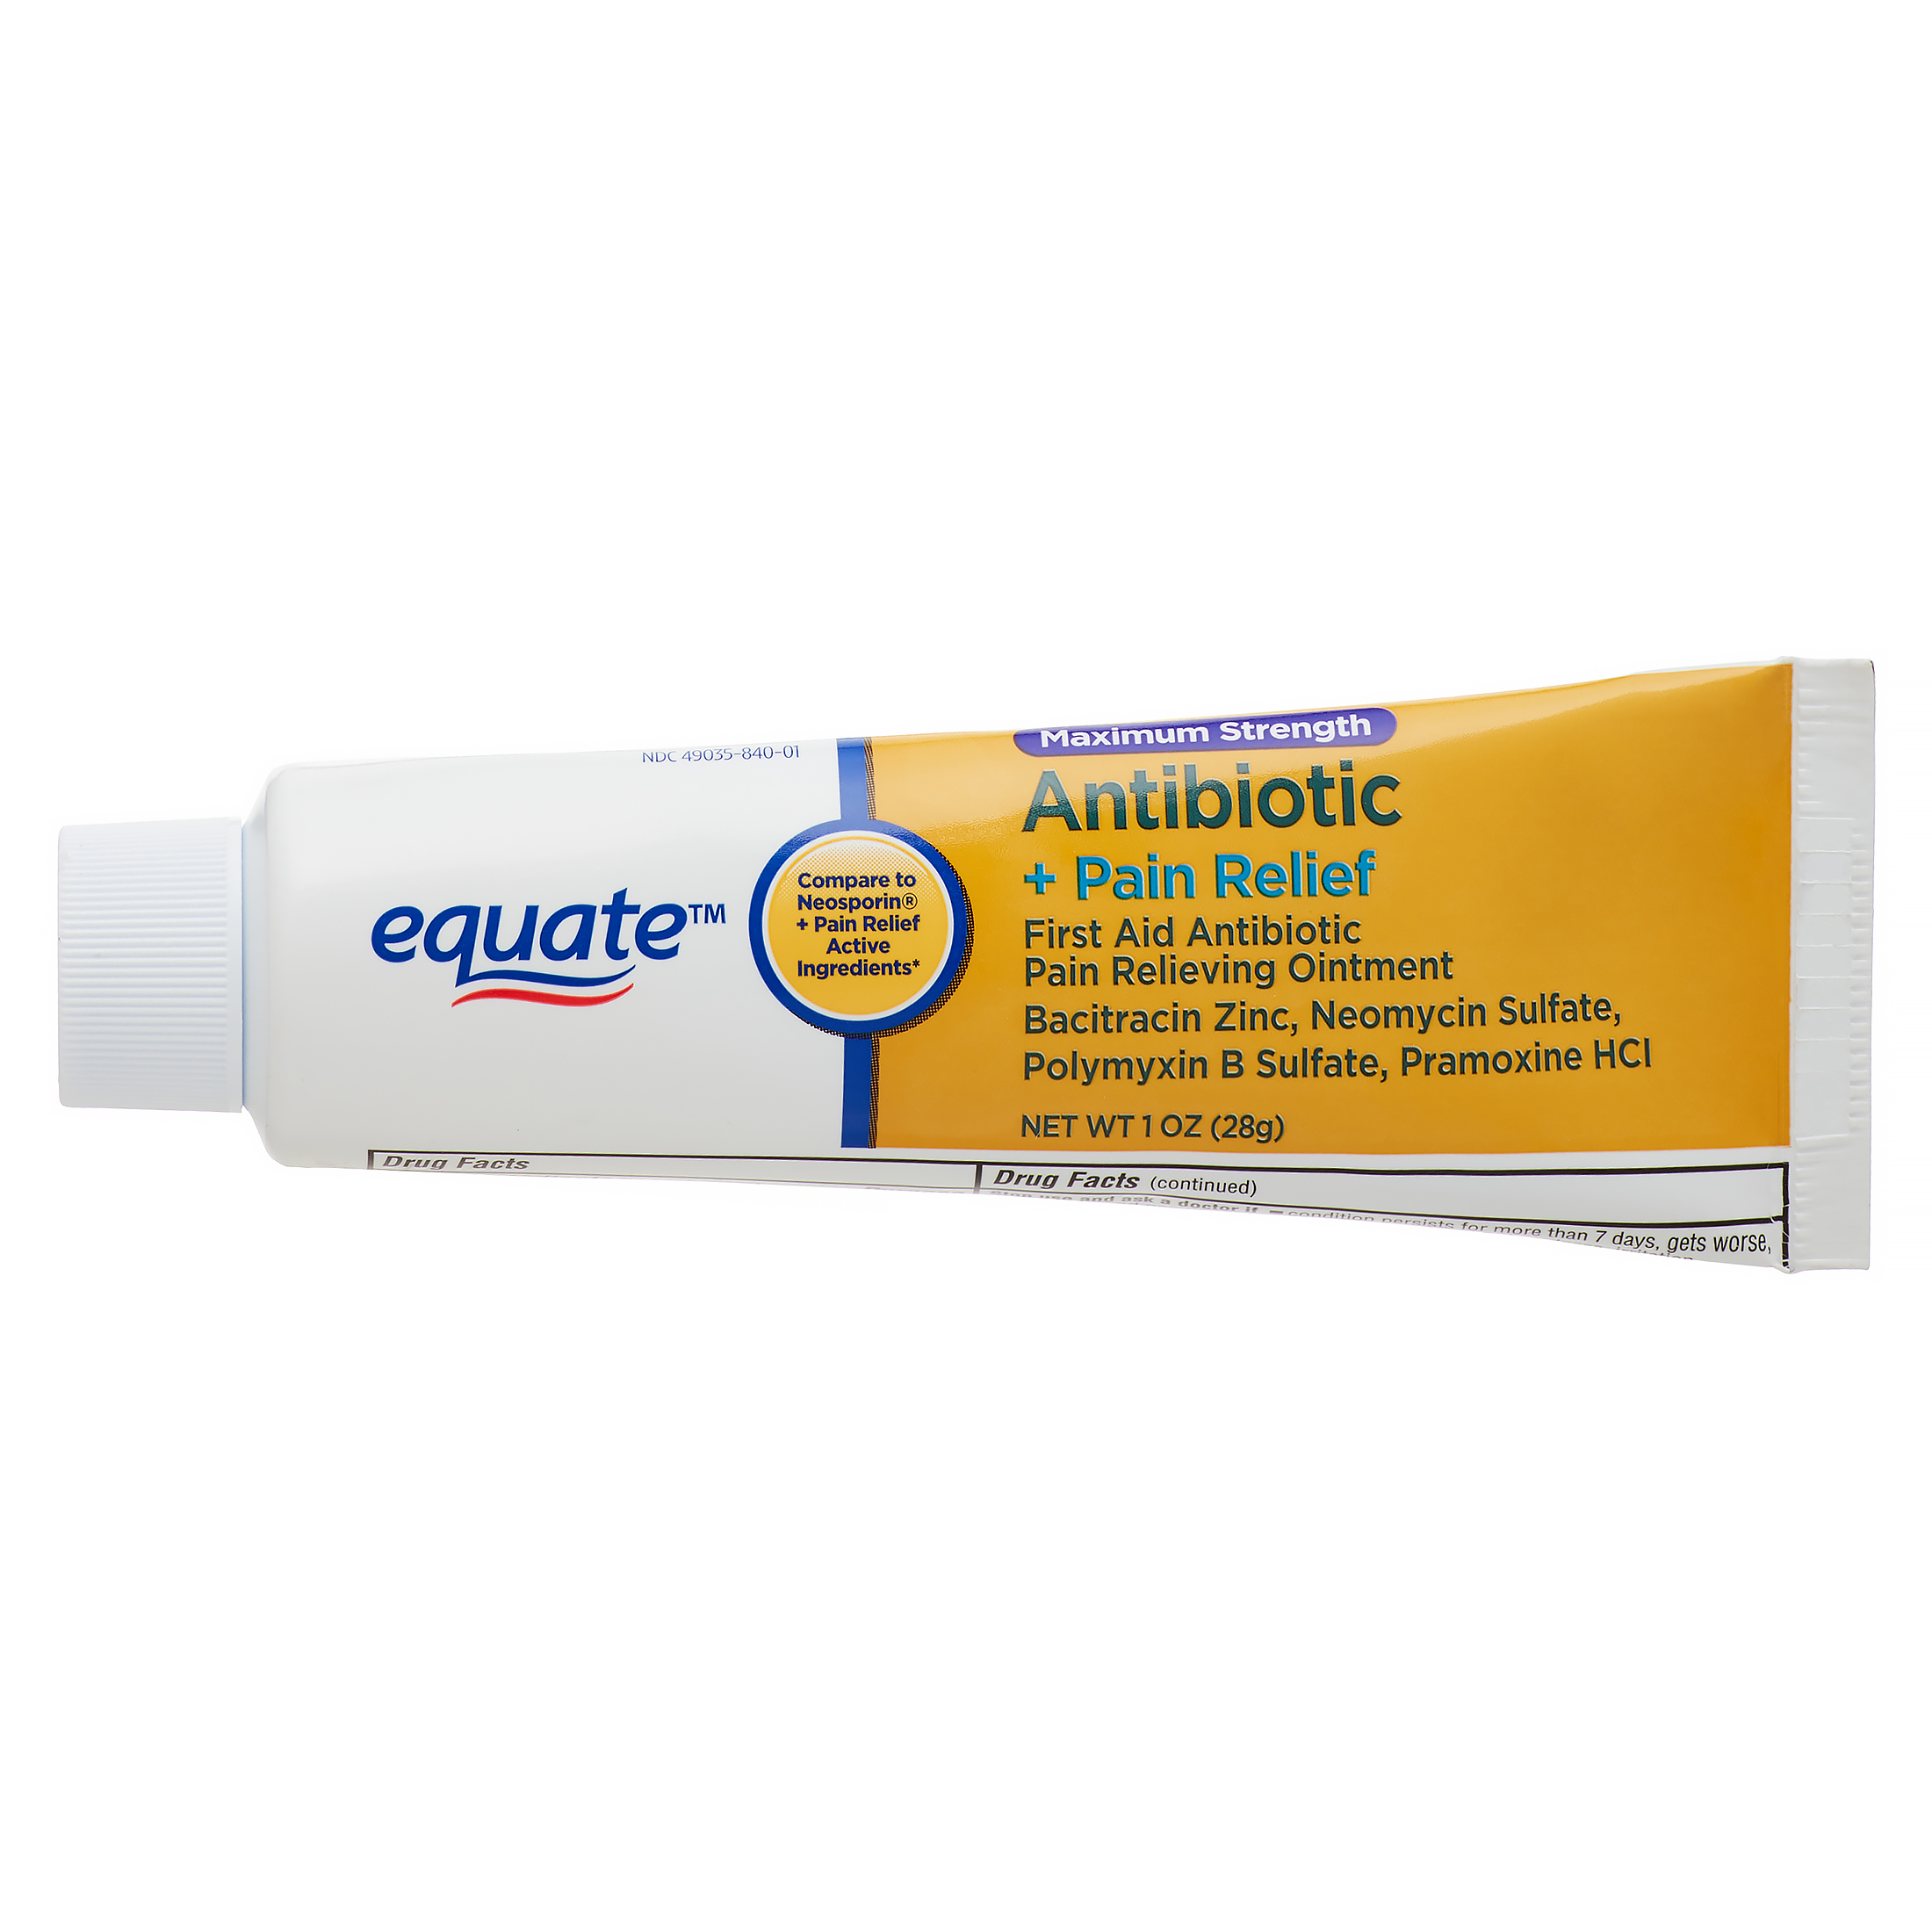 Equate Maximum Strength Antibiotic Cream + Pain Relief, 0.5 oz - image 5 of 9